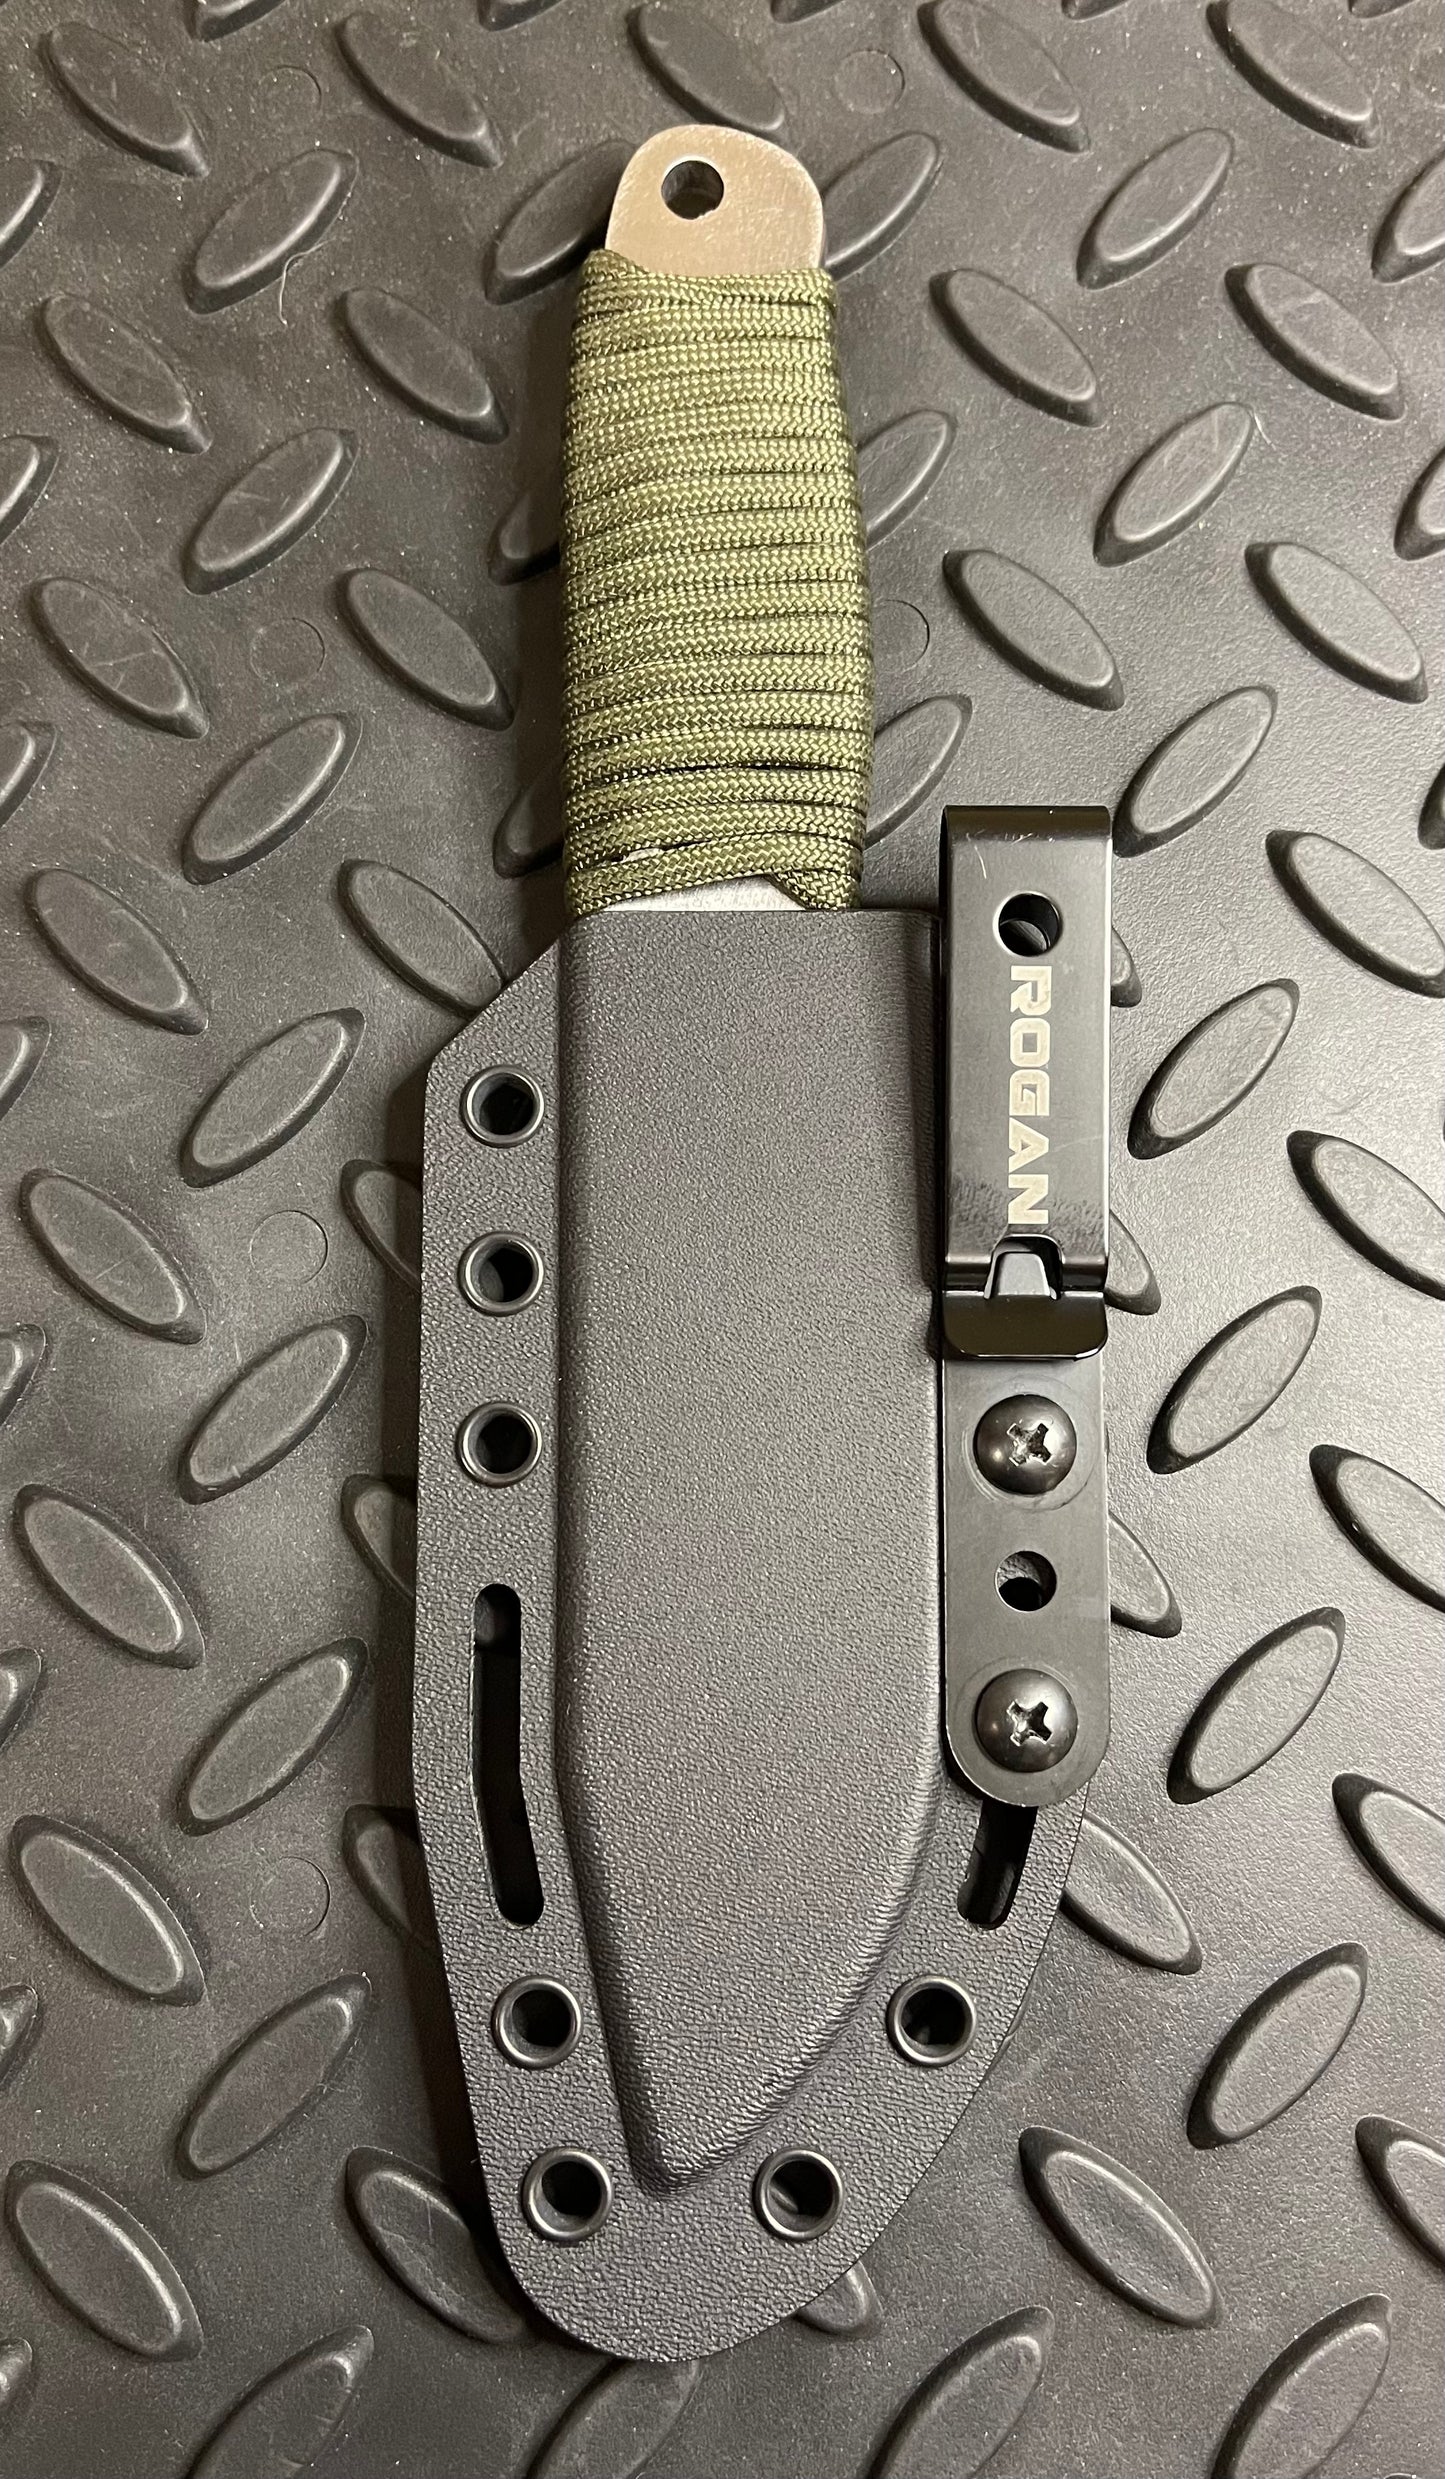 Metal belt clip for kydex sheath